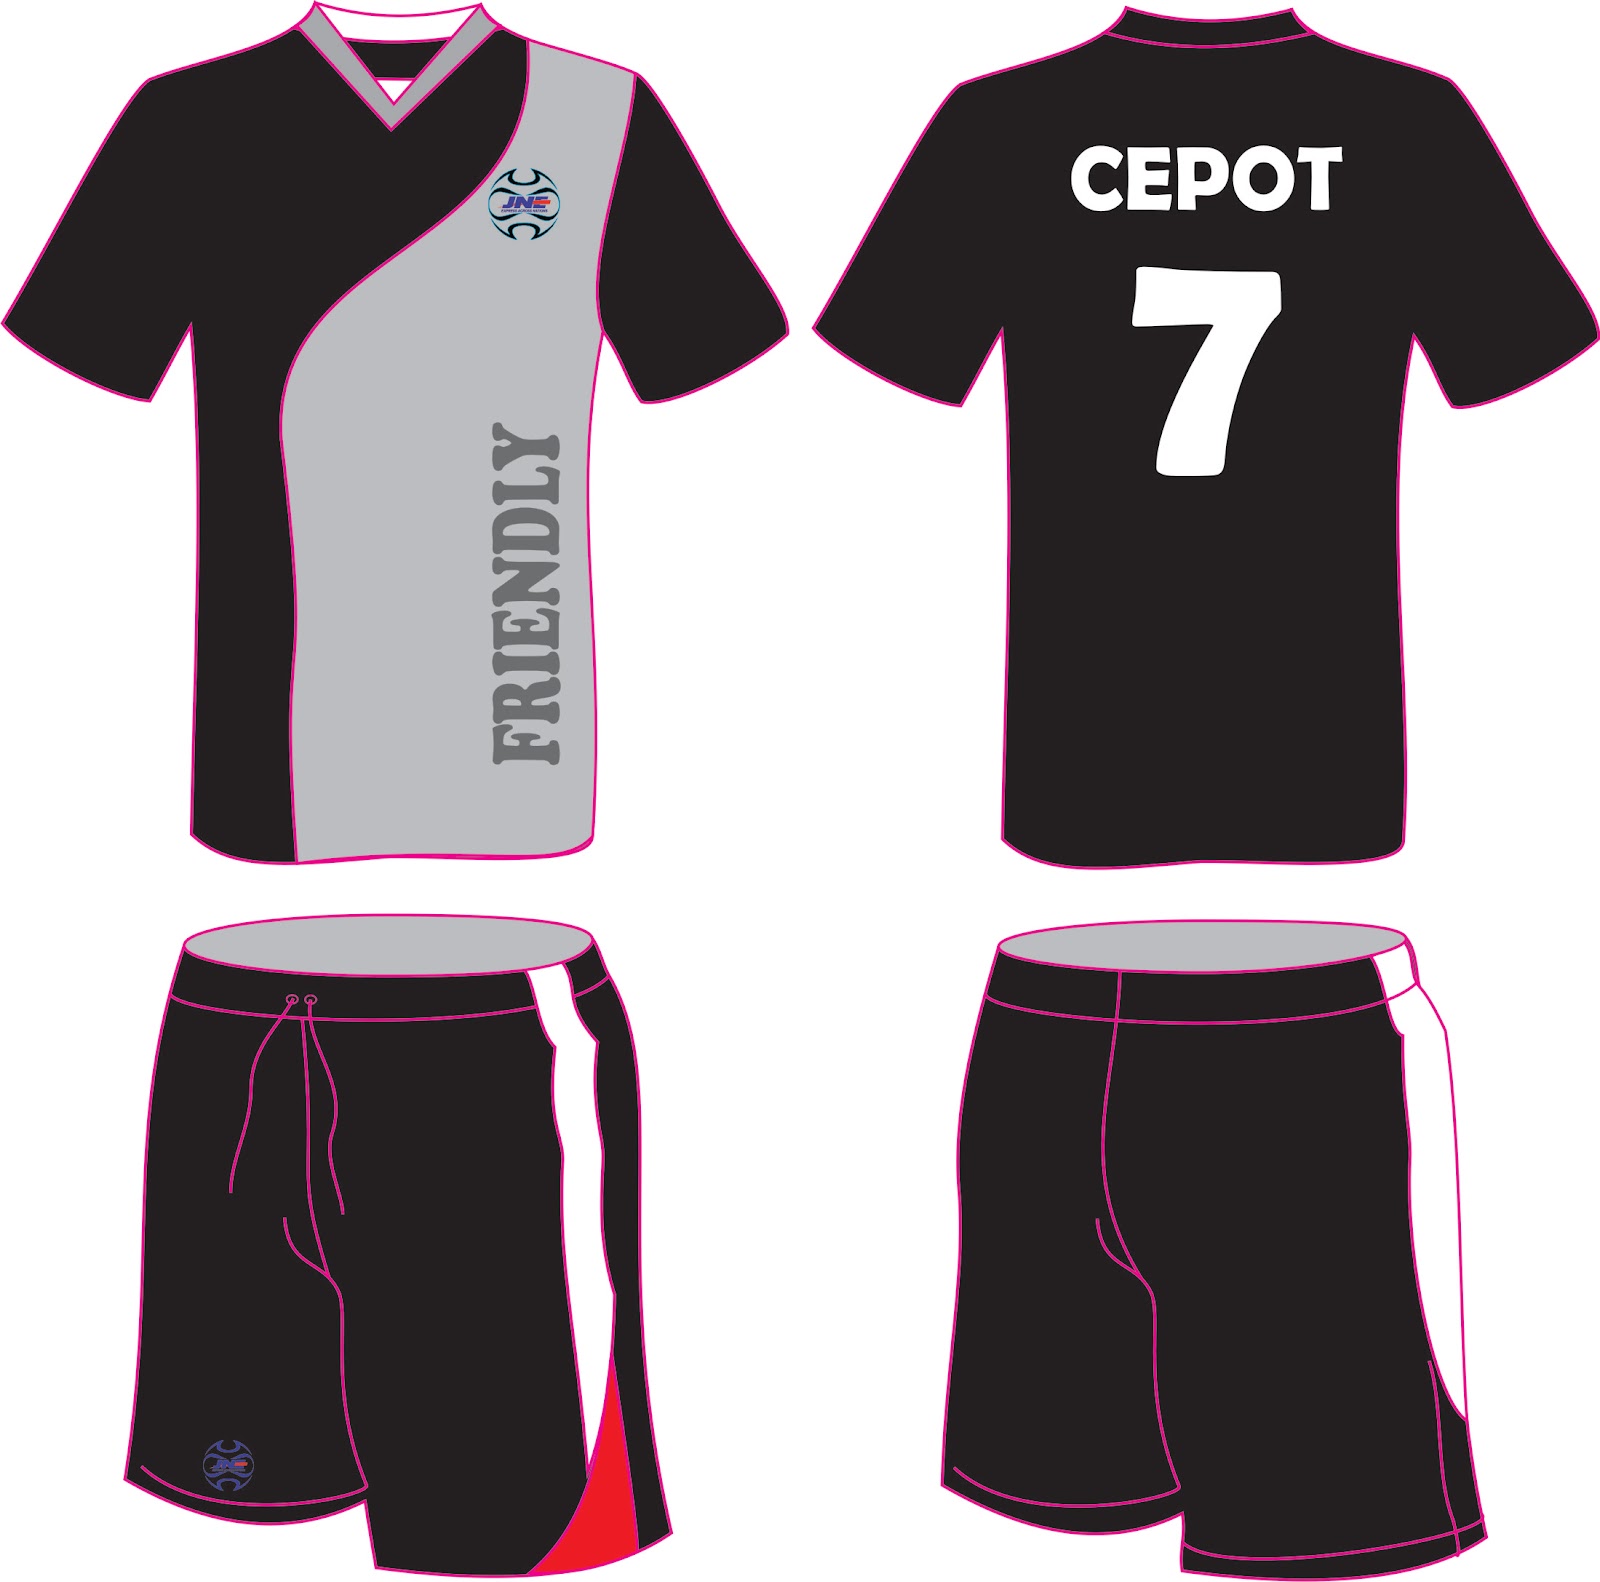 Gambar Baju Kiper Futsal Desain Kaos Jual Sapawarga